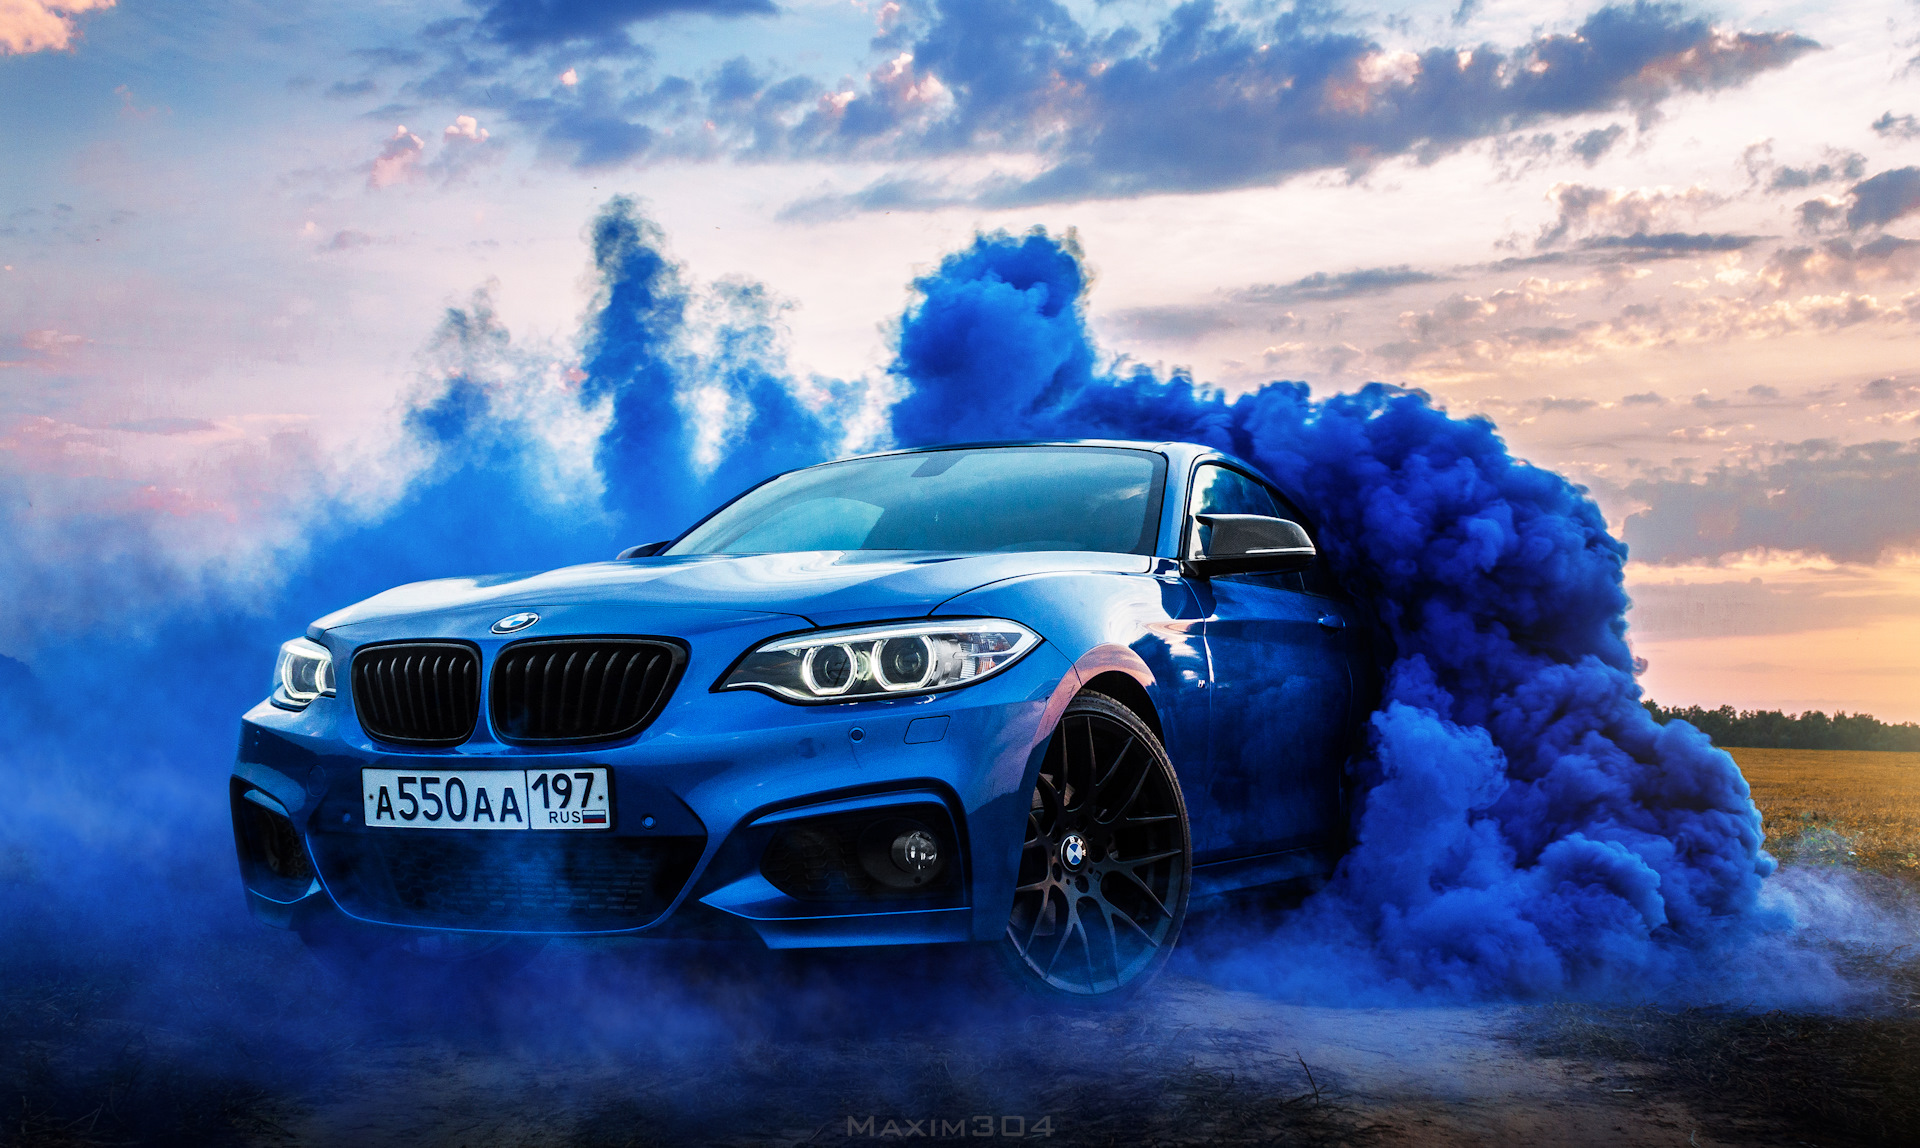 Аватарка м5. БМВ м5 синяя. BMW m5 дым. Крутая БМВ м5. БМВ дрифт синий м5.